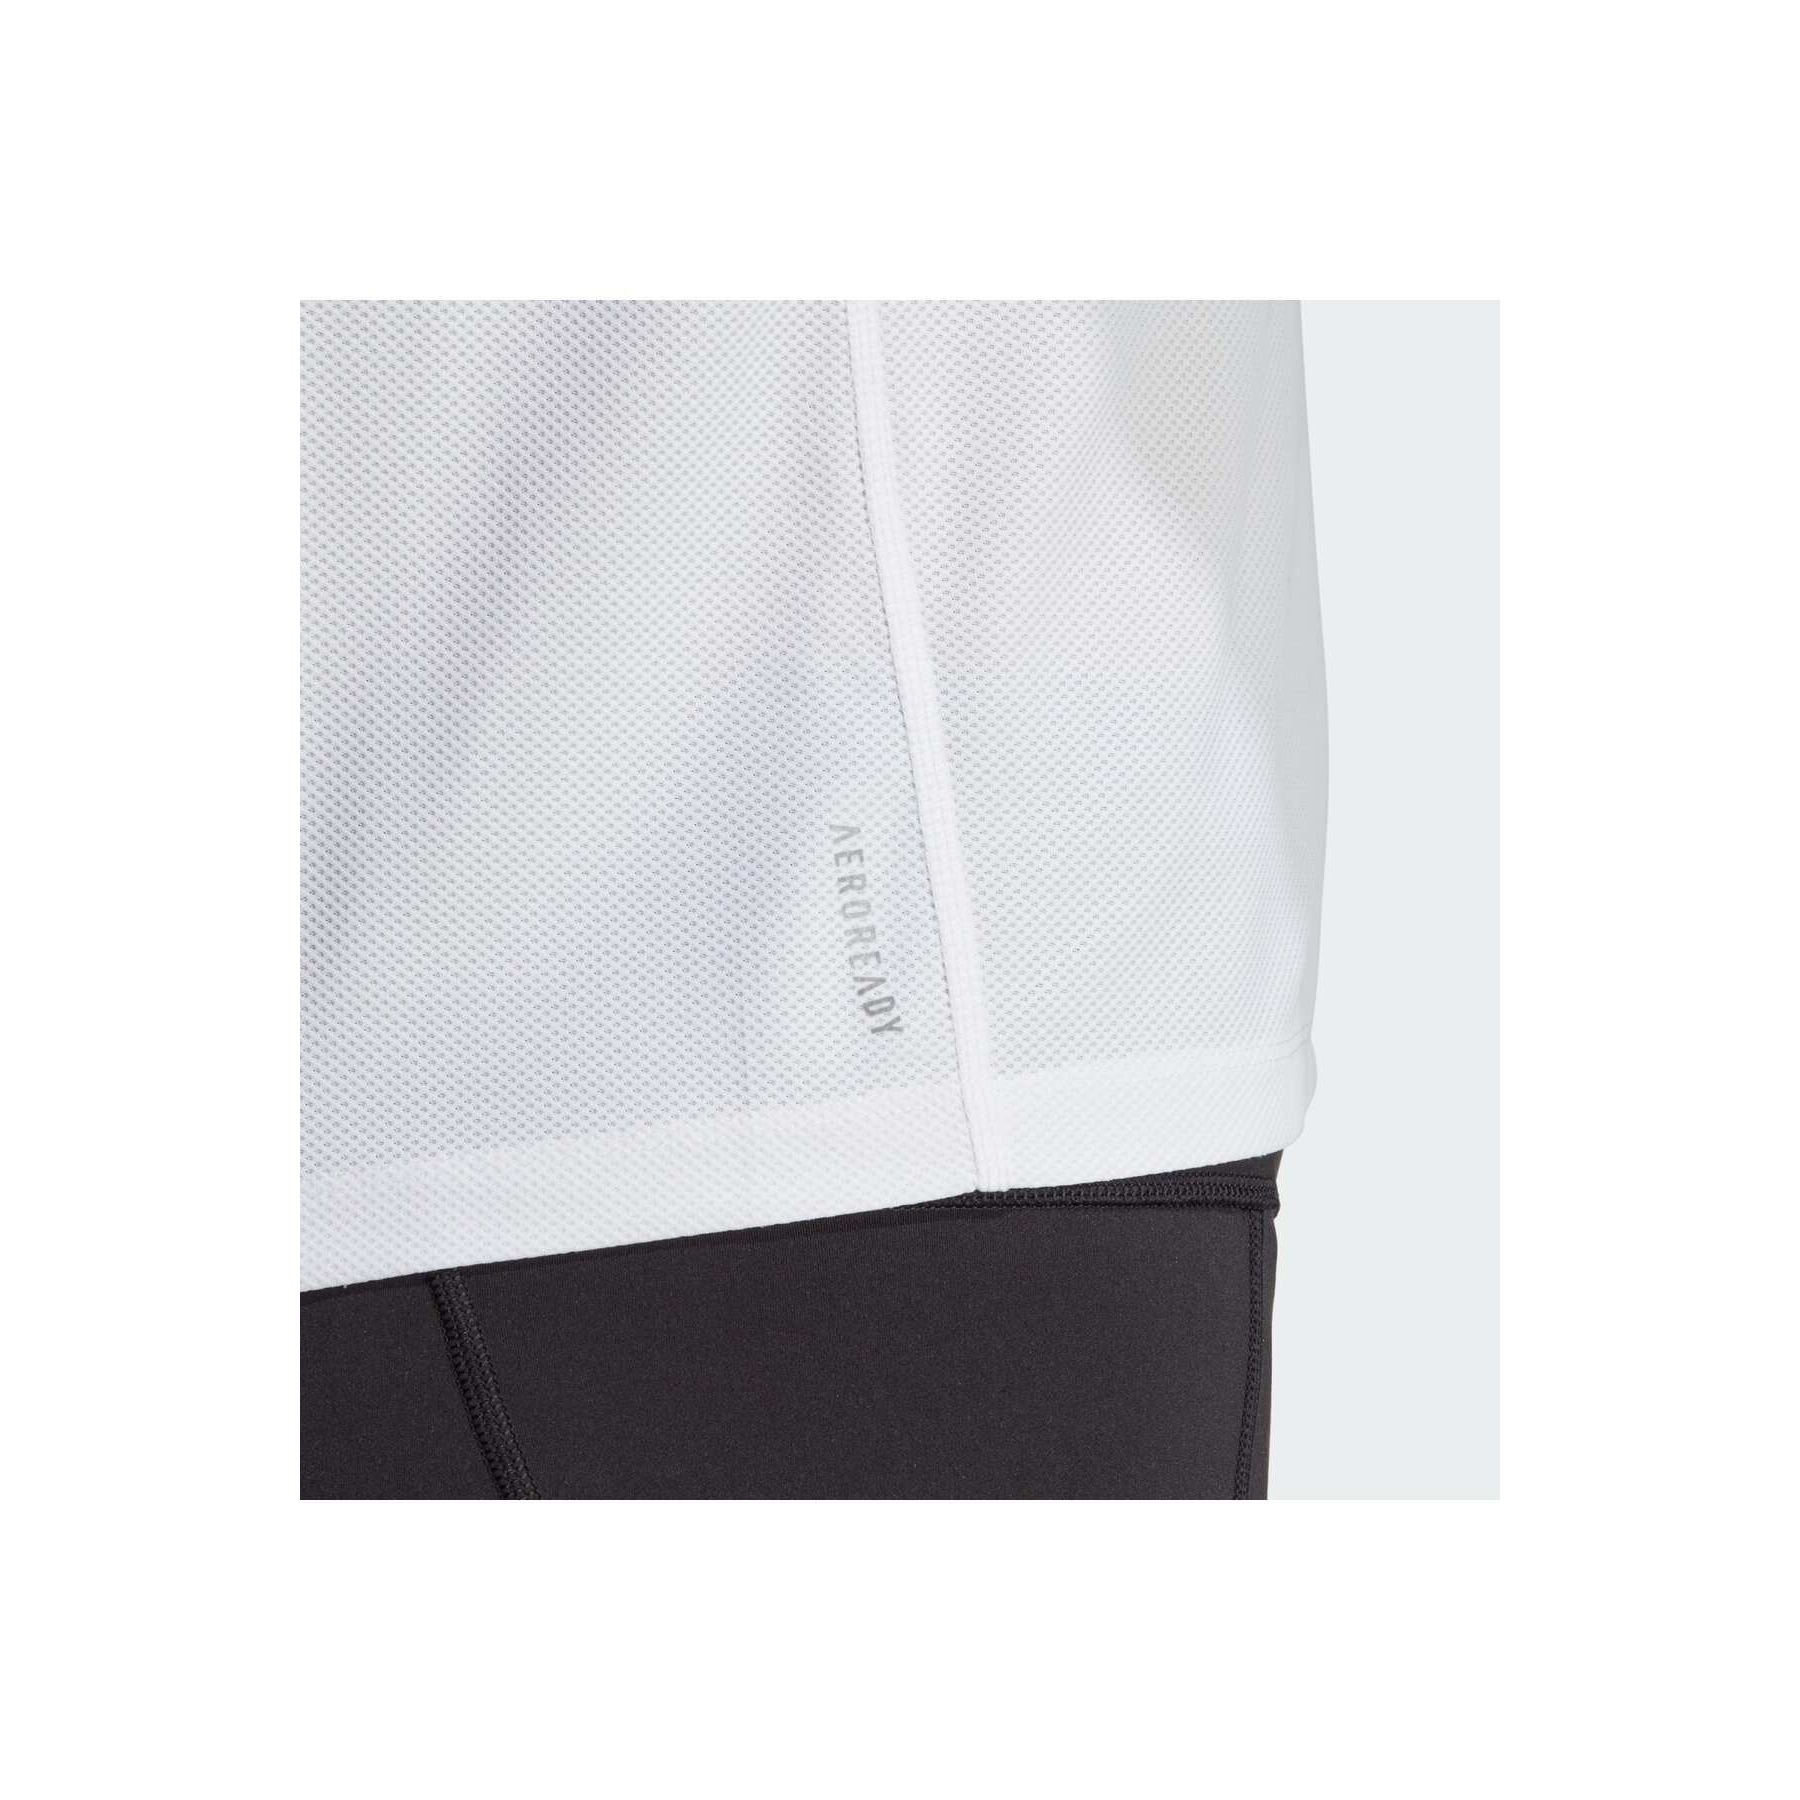 adidas Otr B Kadın Beyaz Tişört (IK7442)